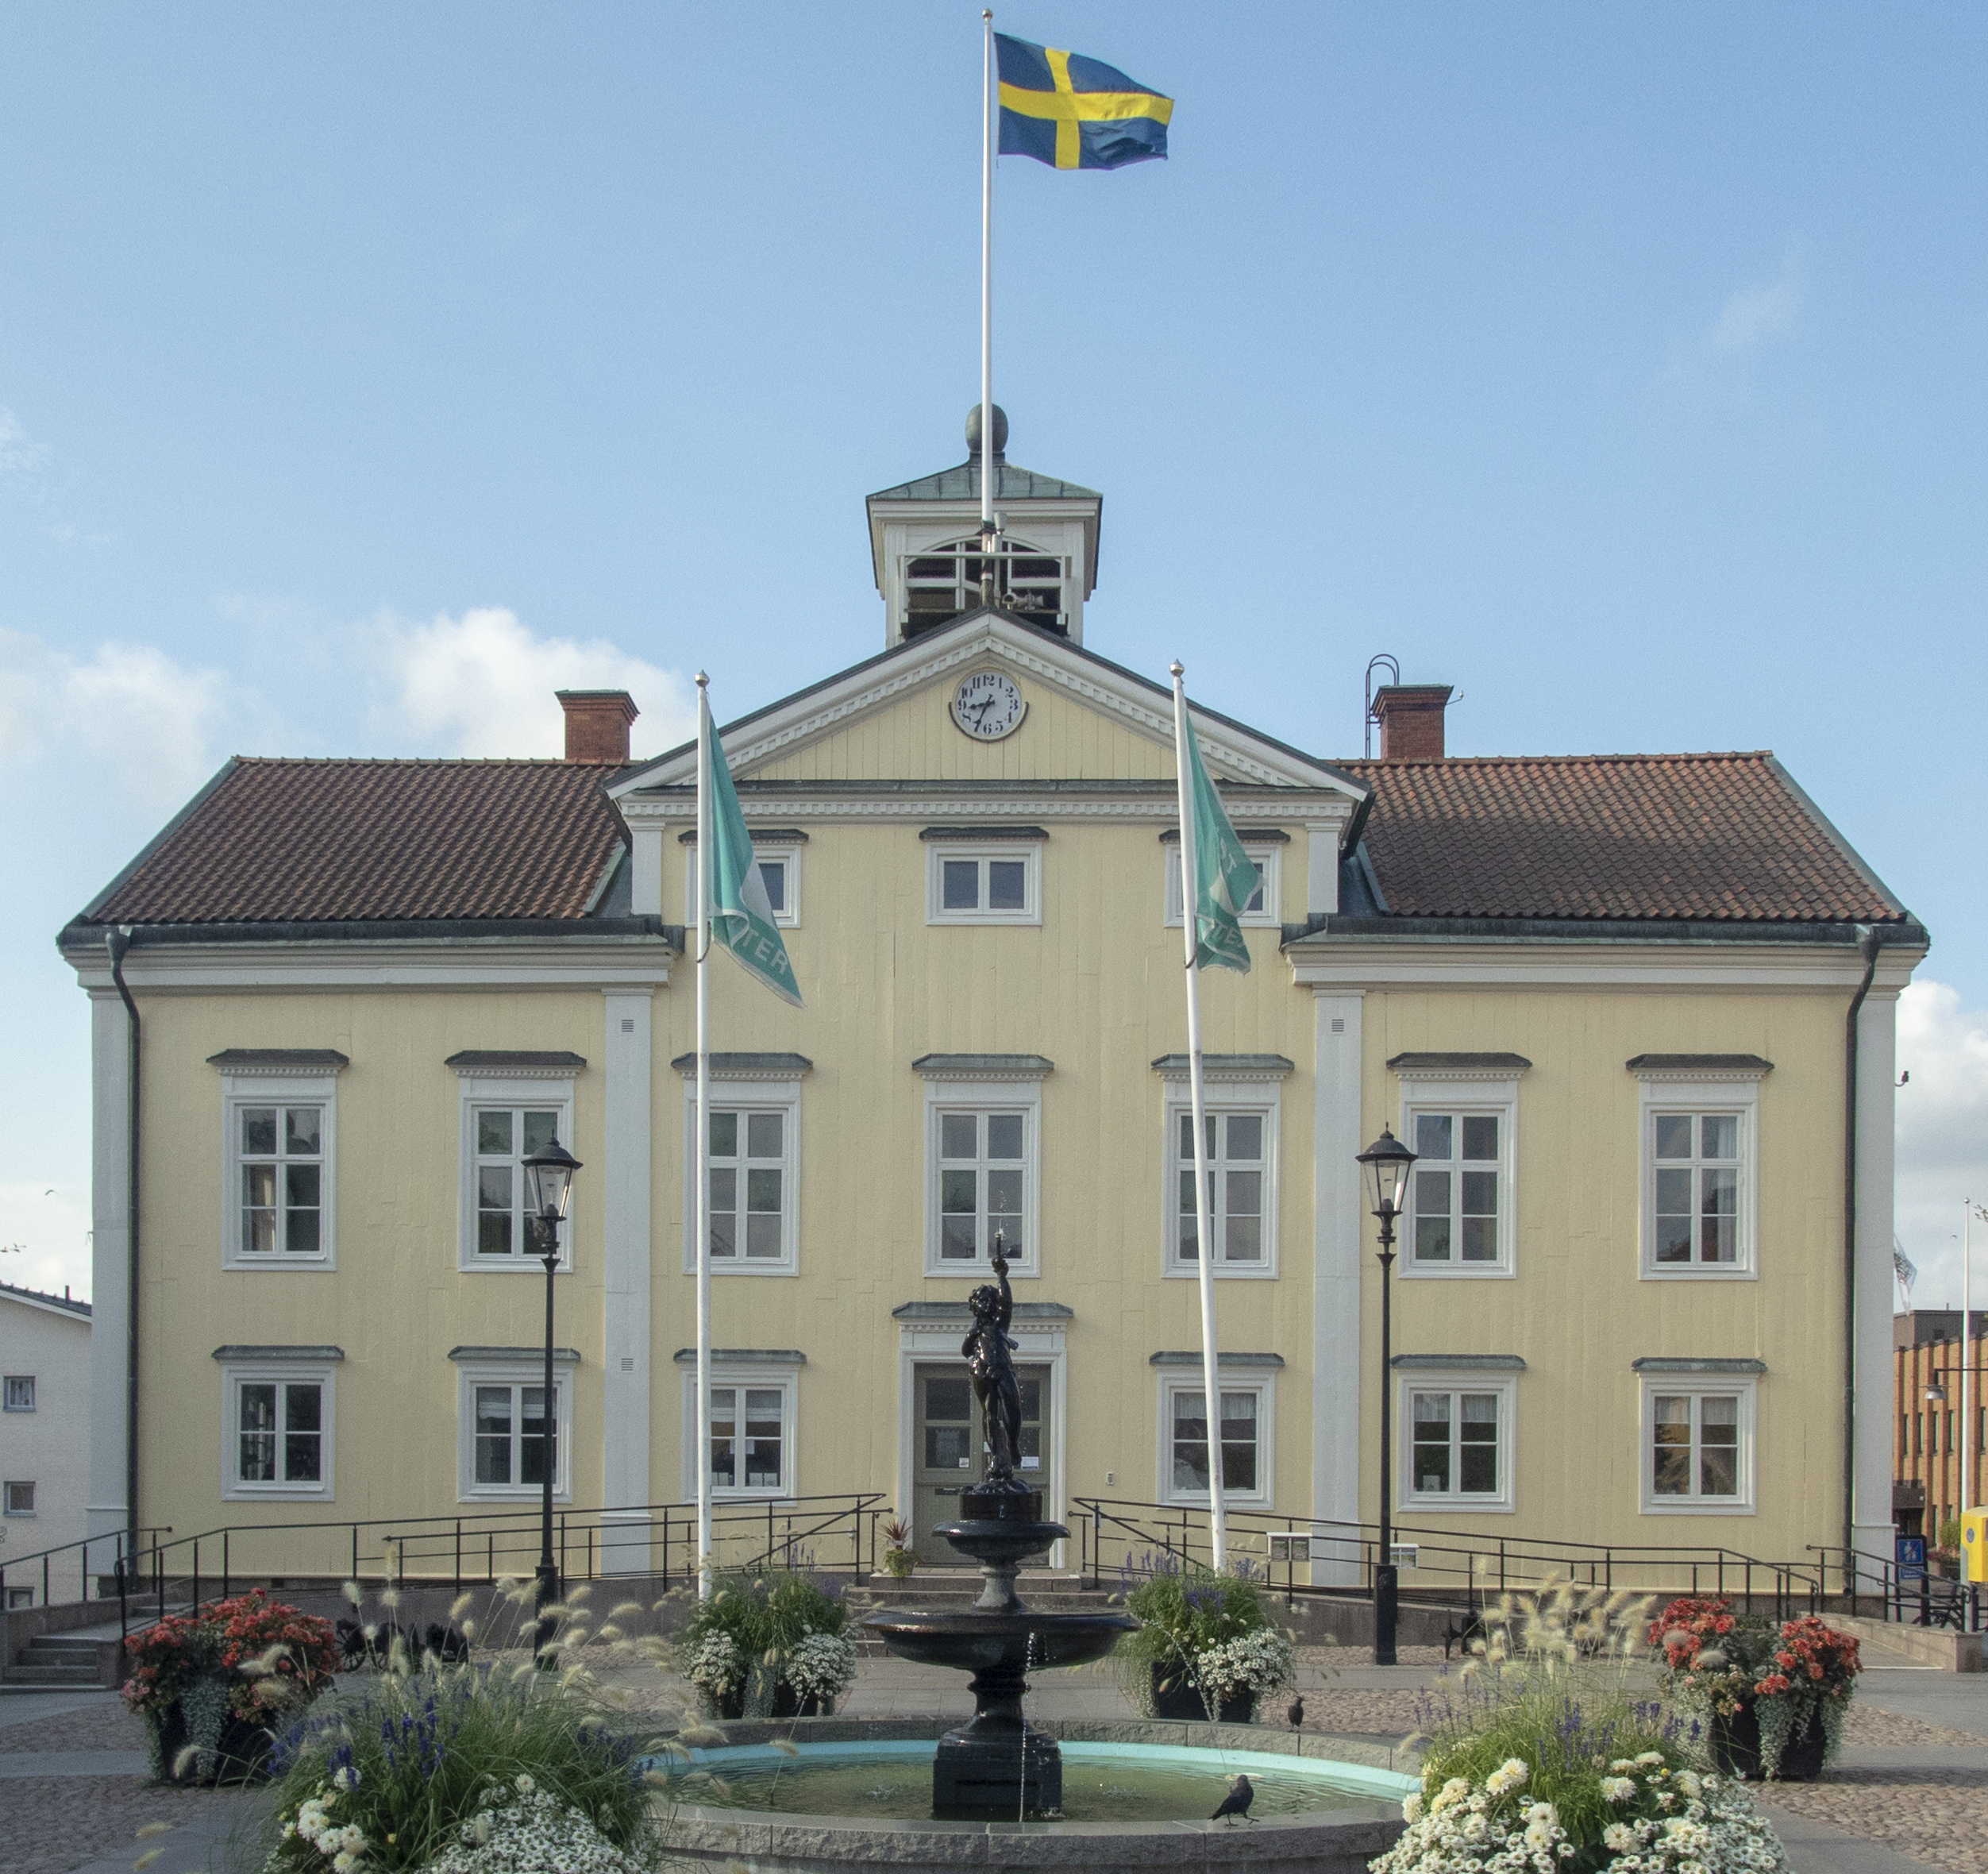 Rådhuset i Vimmerby är Sveriges sjuttiofjärde vackraste byggnad genom tiderna.